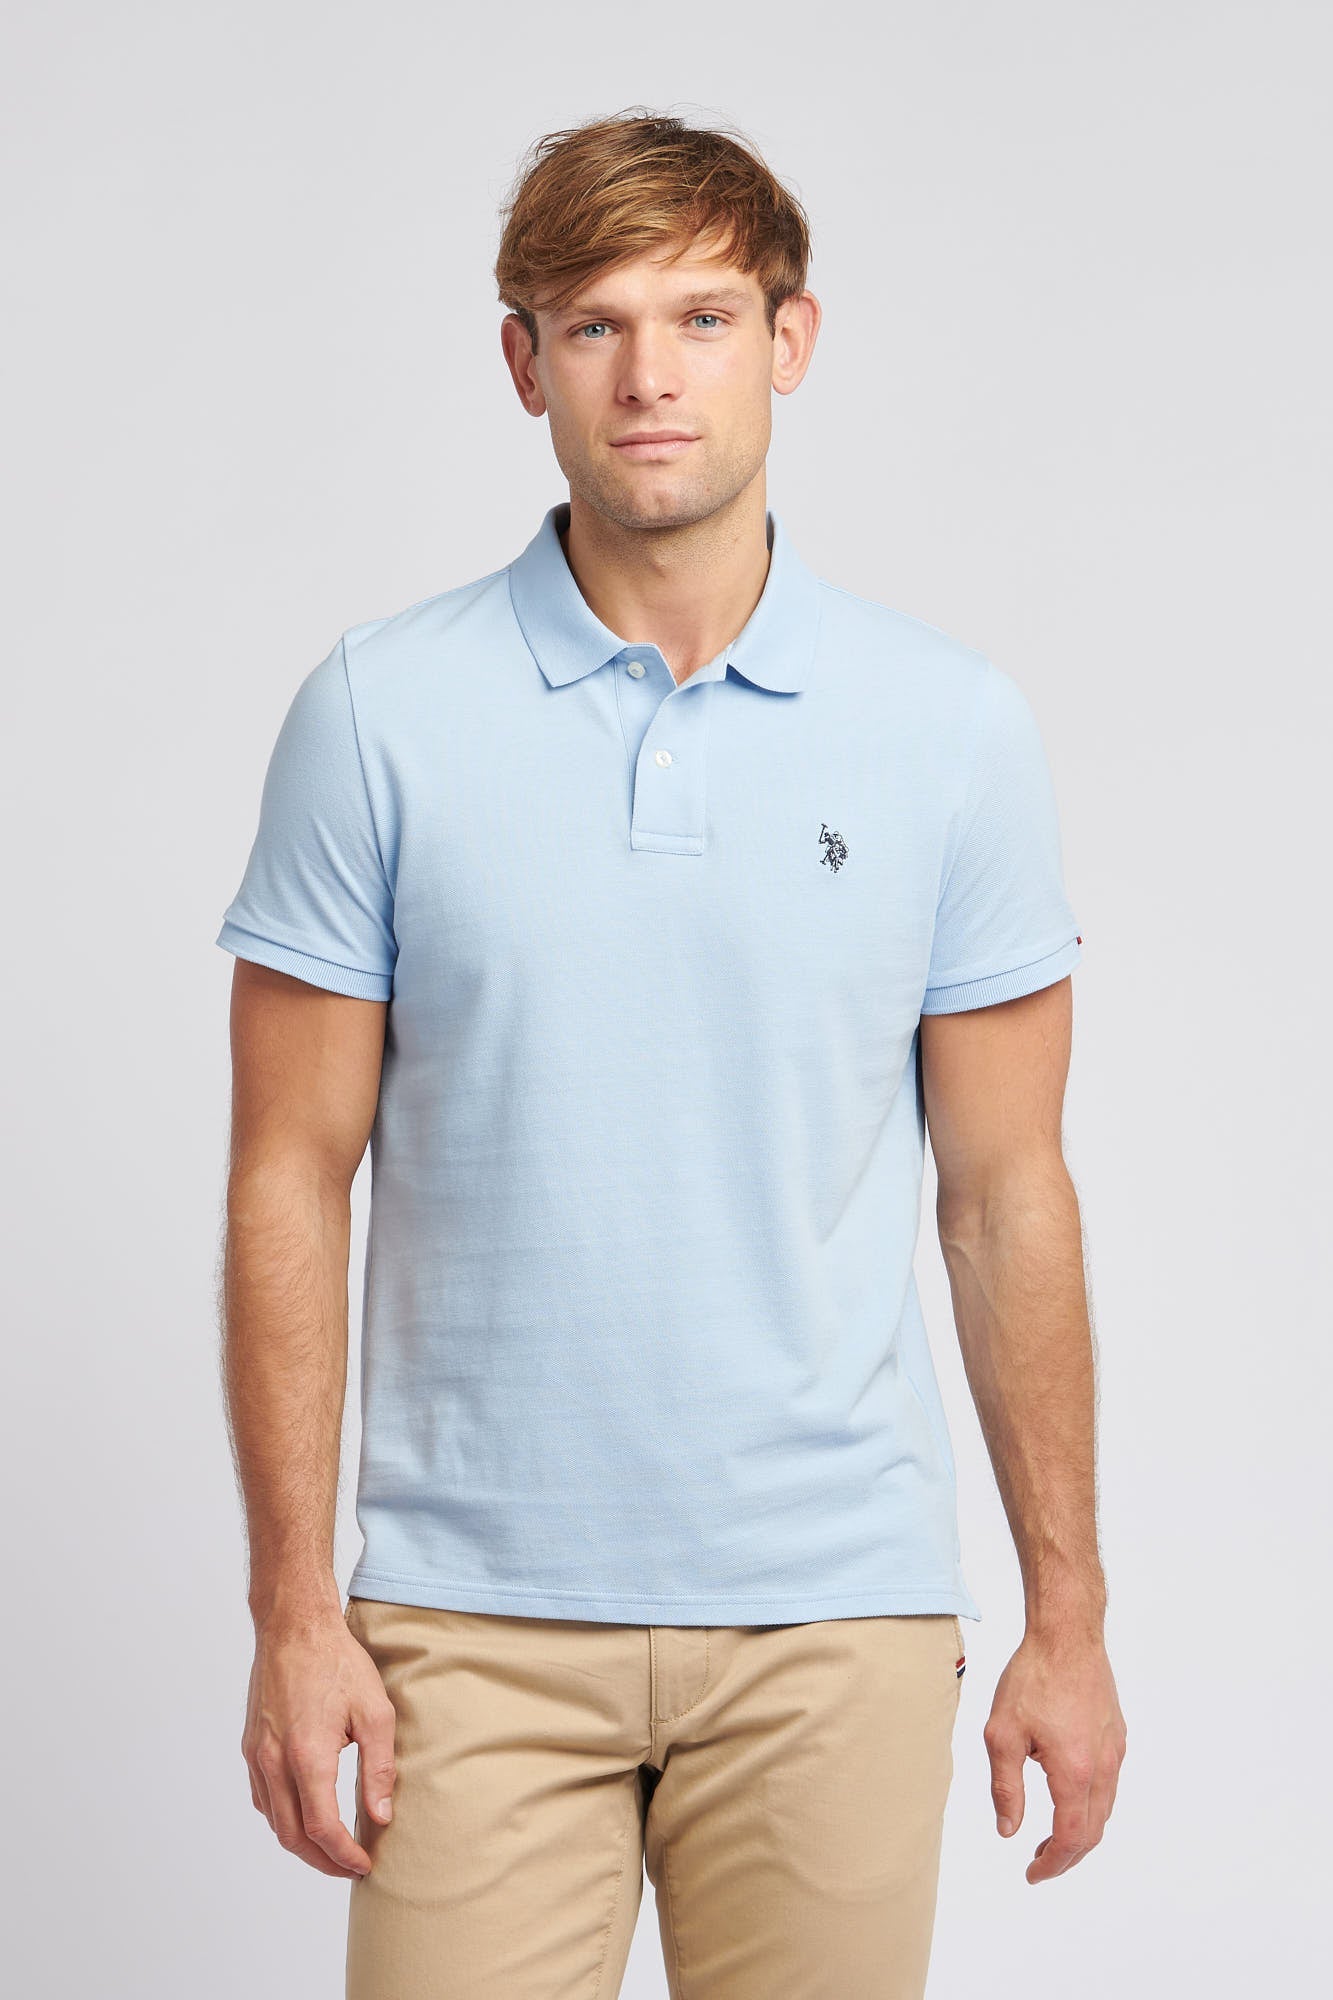 U.S. Polo Assn. Mens Pique Polo Shirt in Chambray Blue